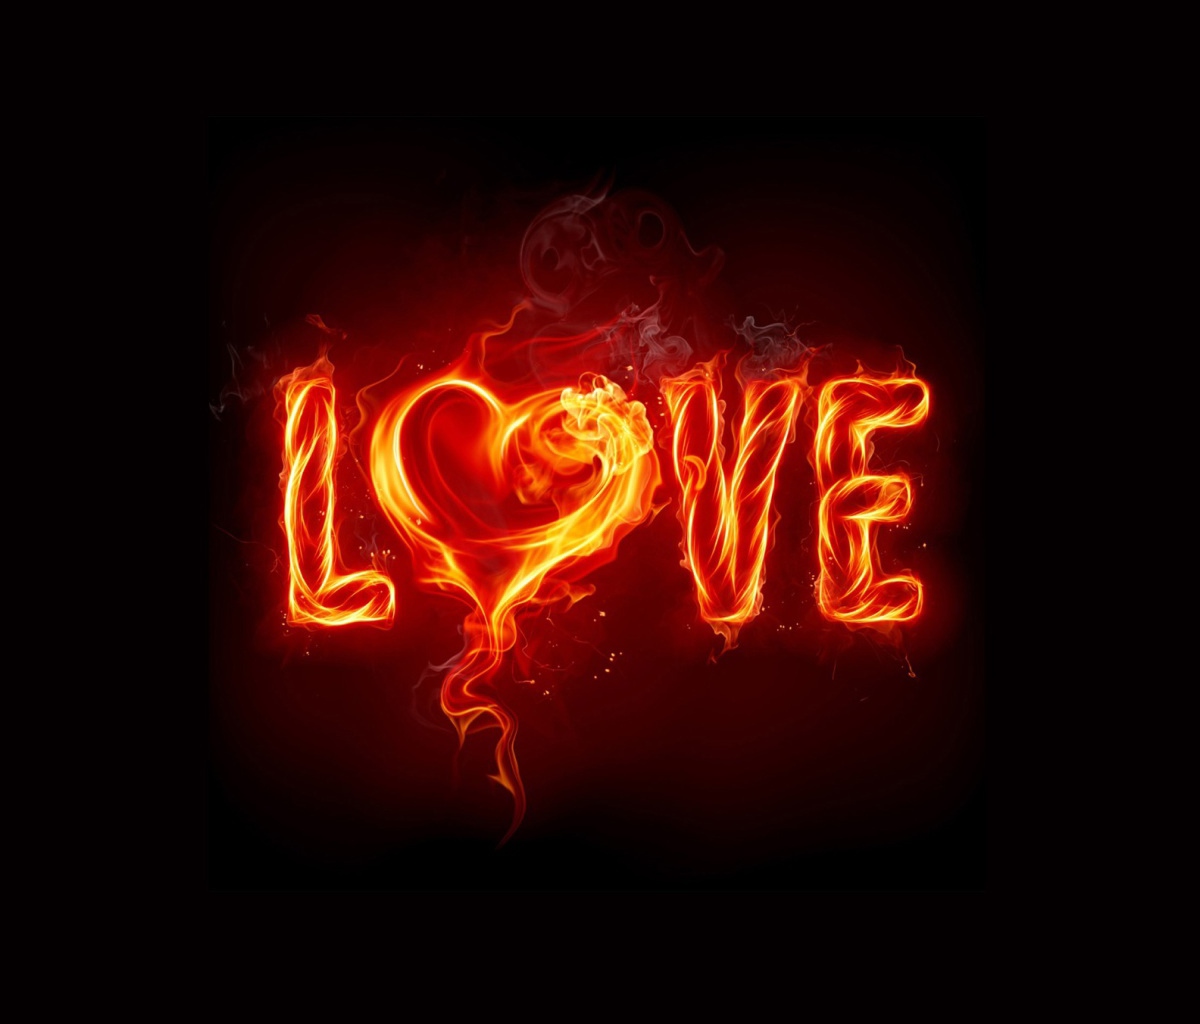 Das Fire Love Wallpaper 1200x1024